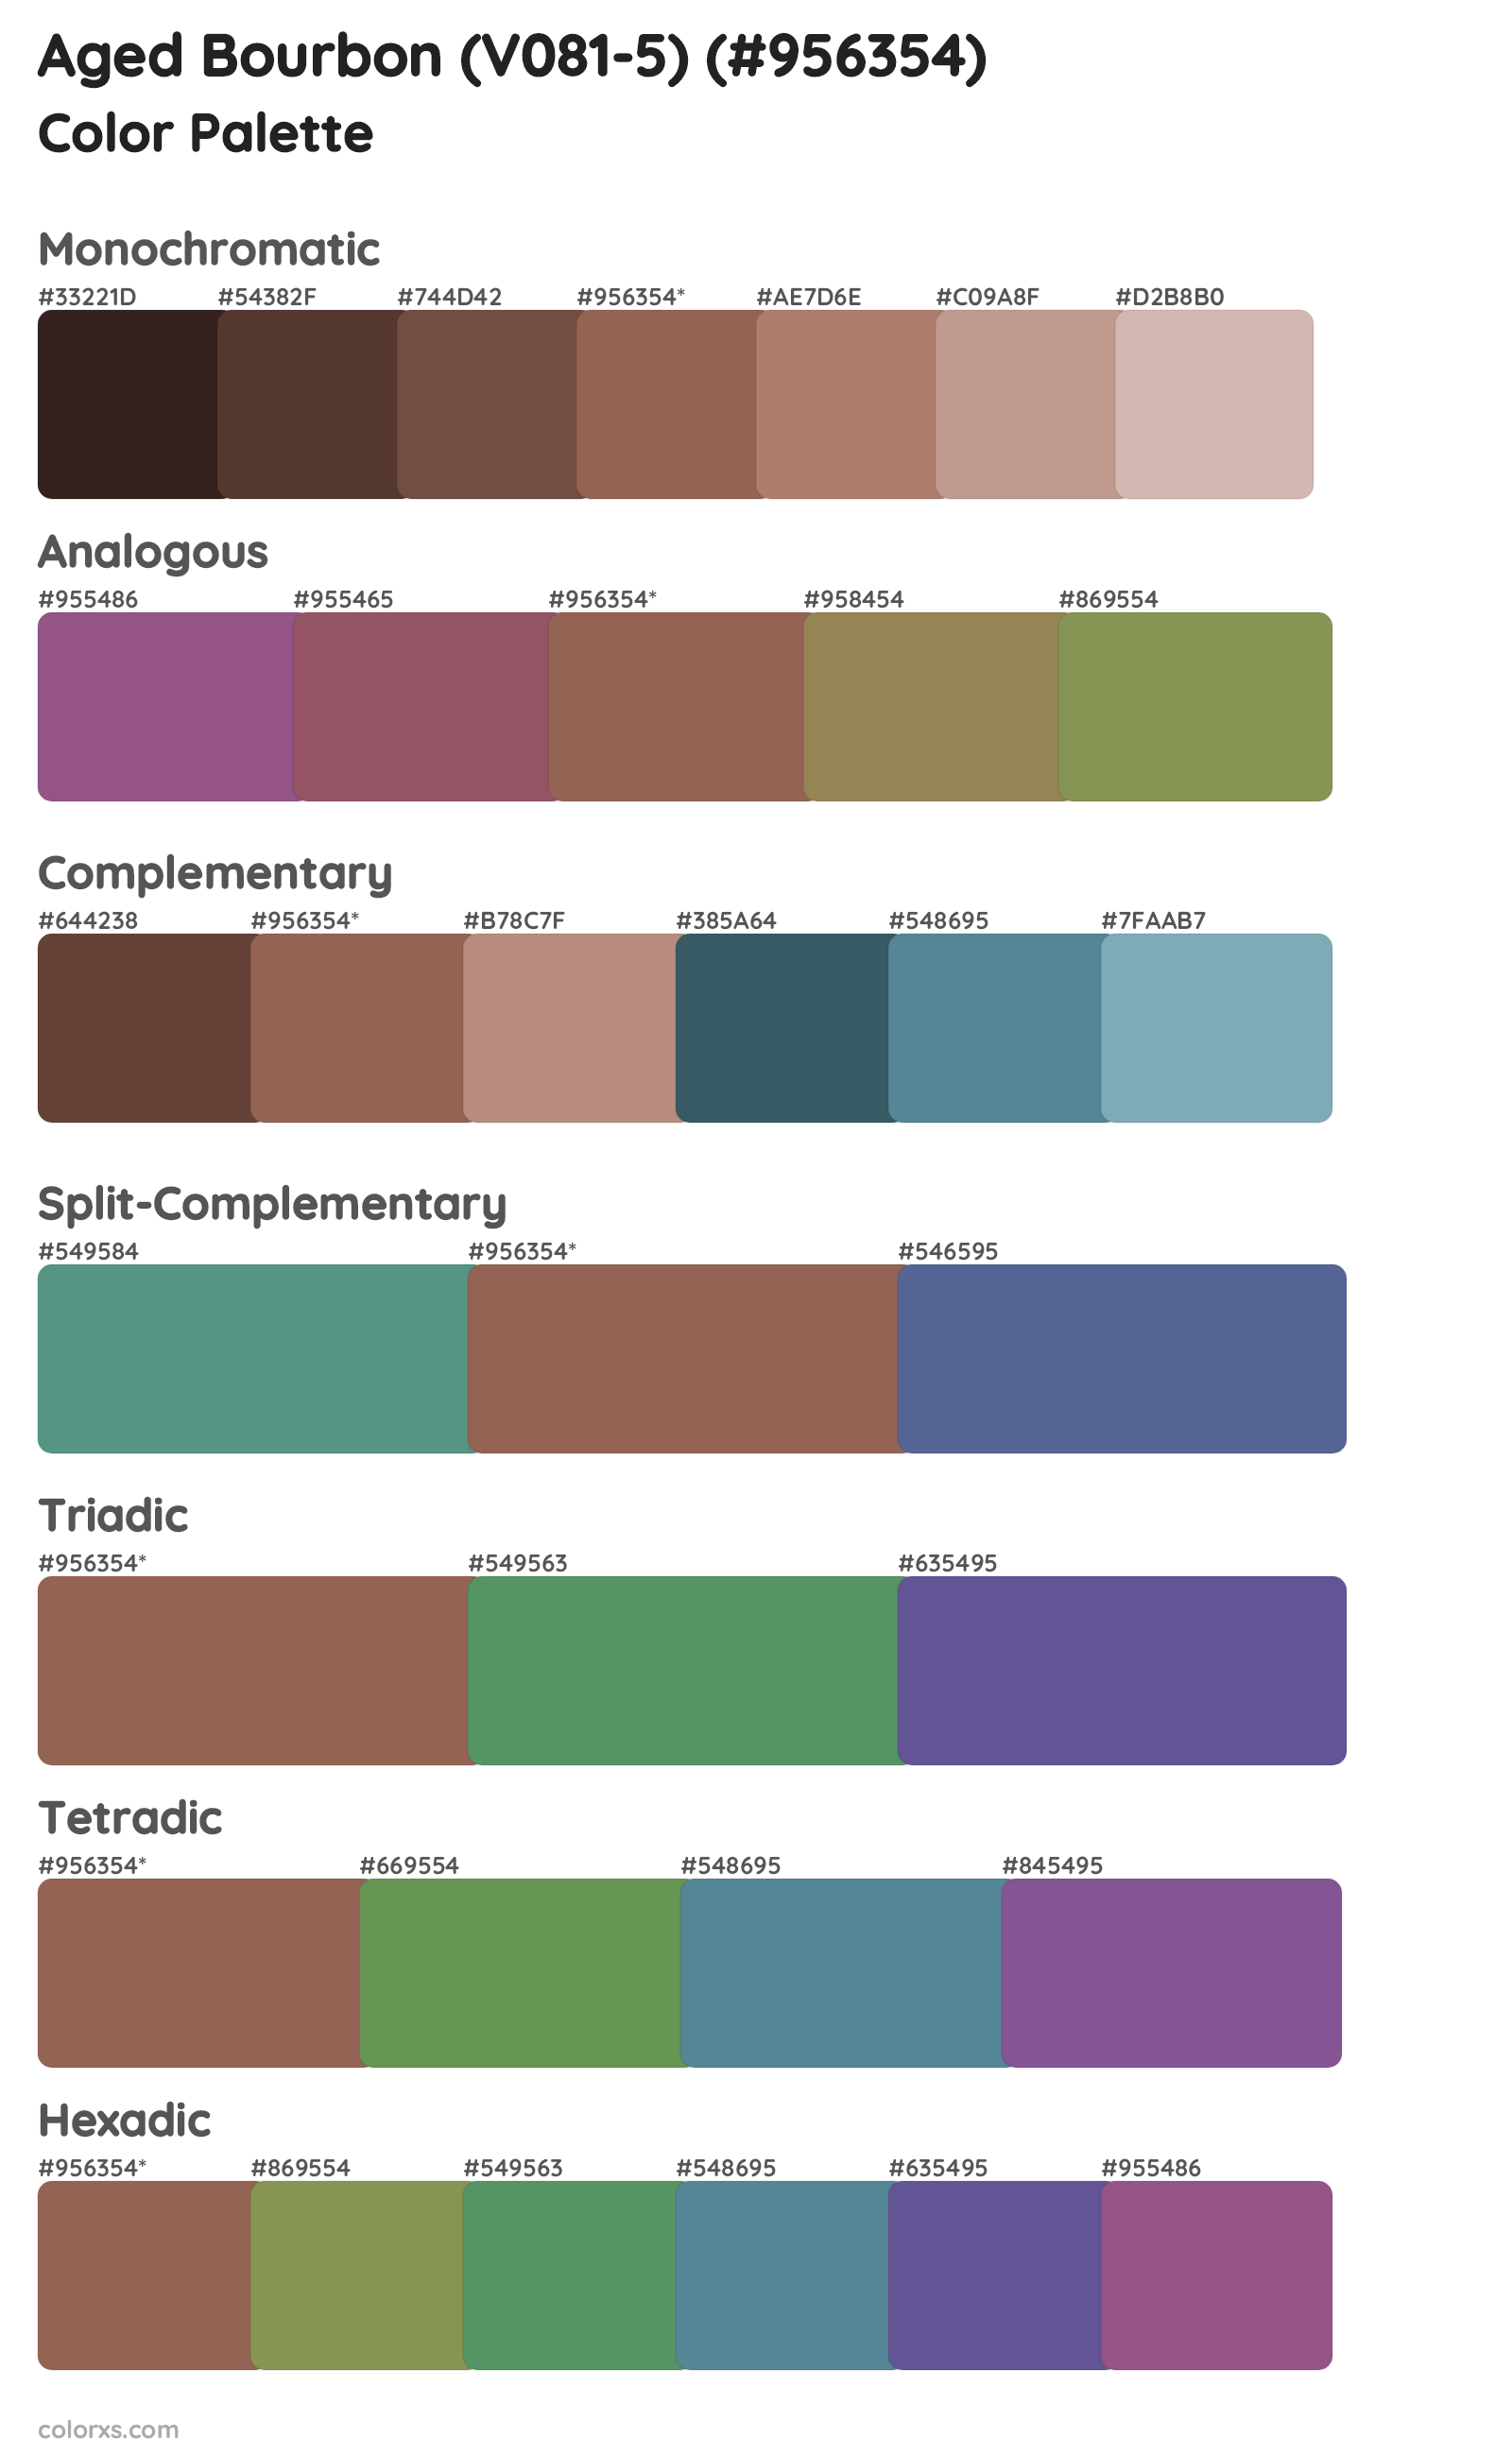 Aged Bourbon (V081-5) Color Scheme Palettes